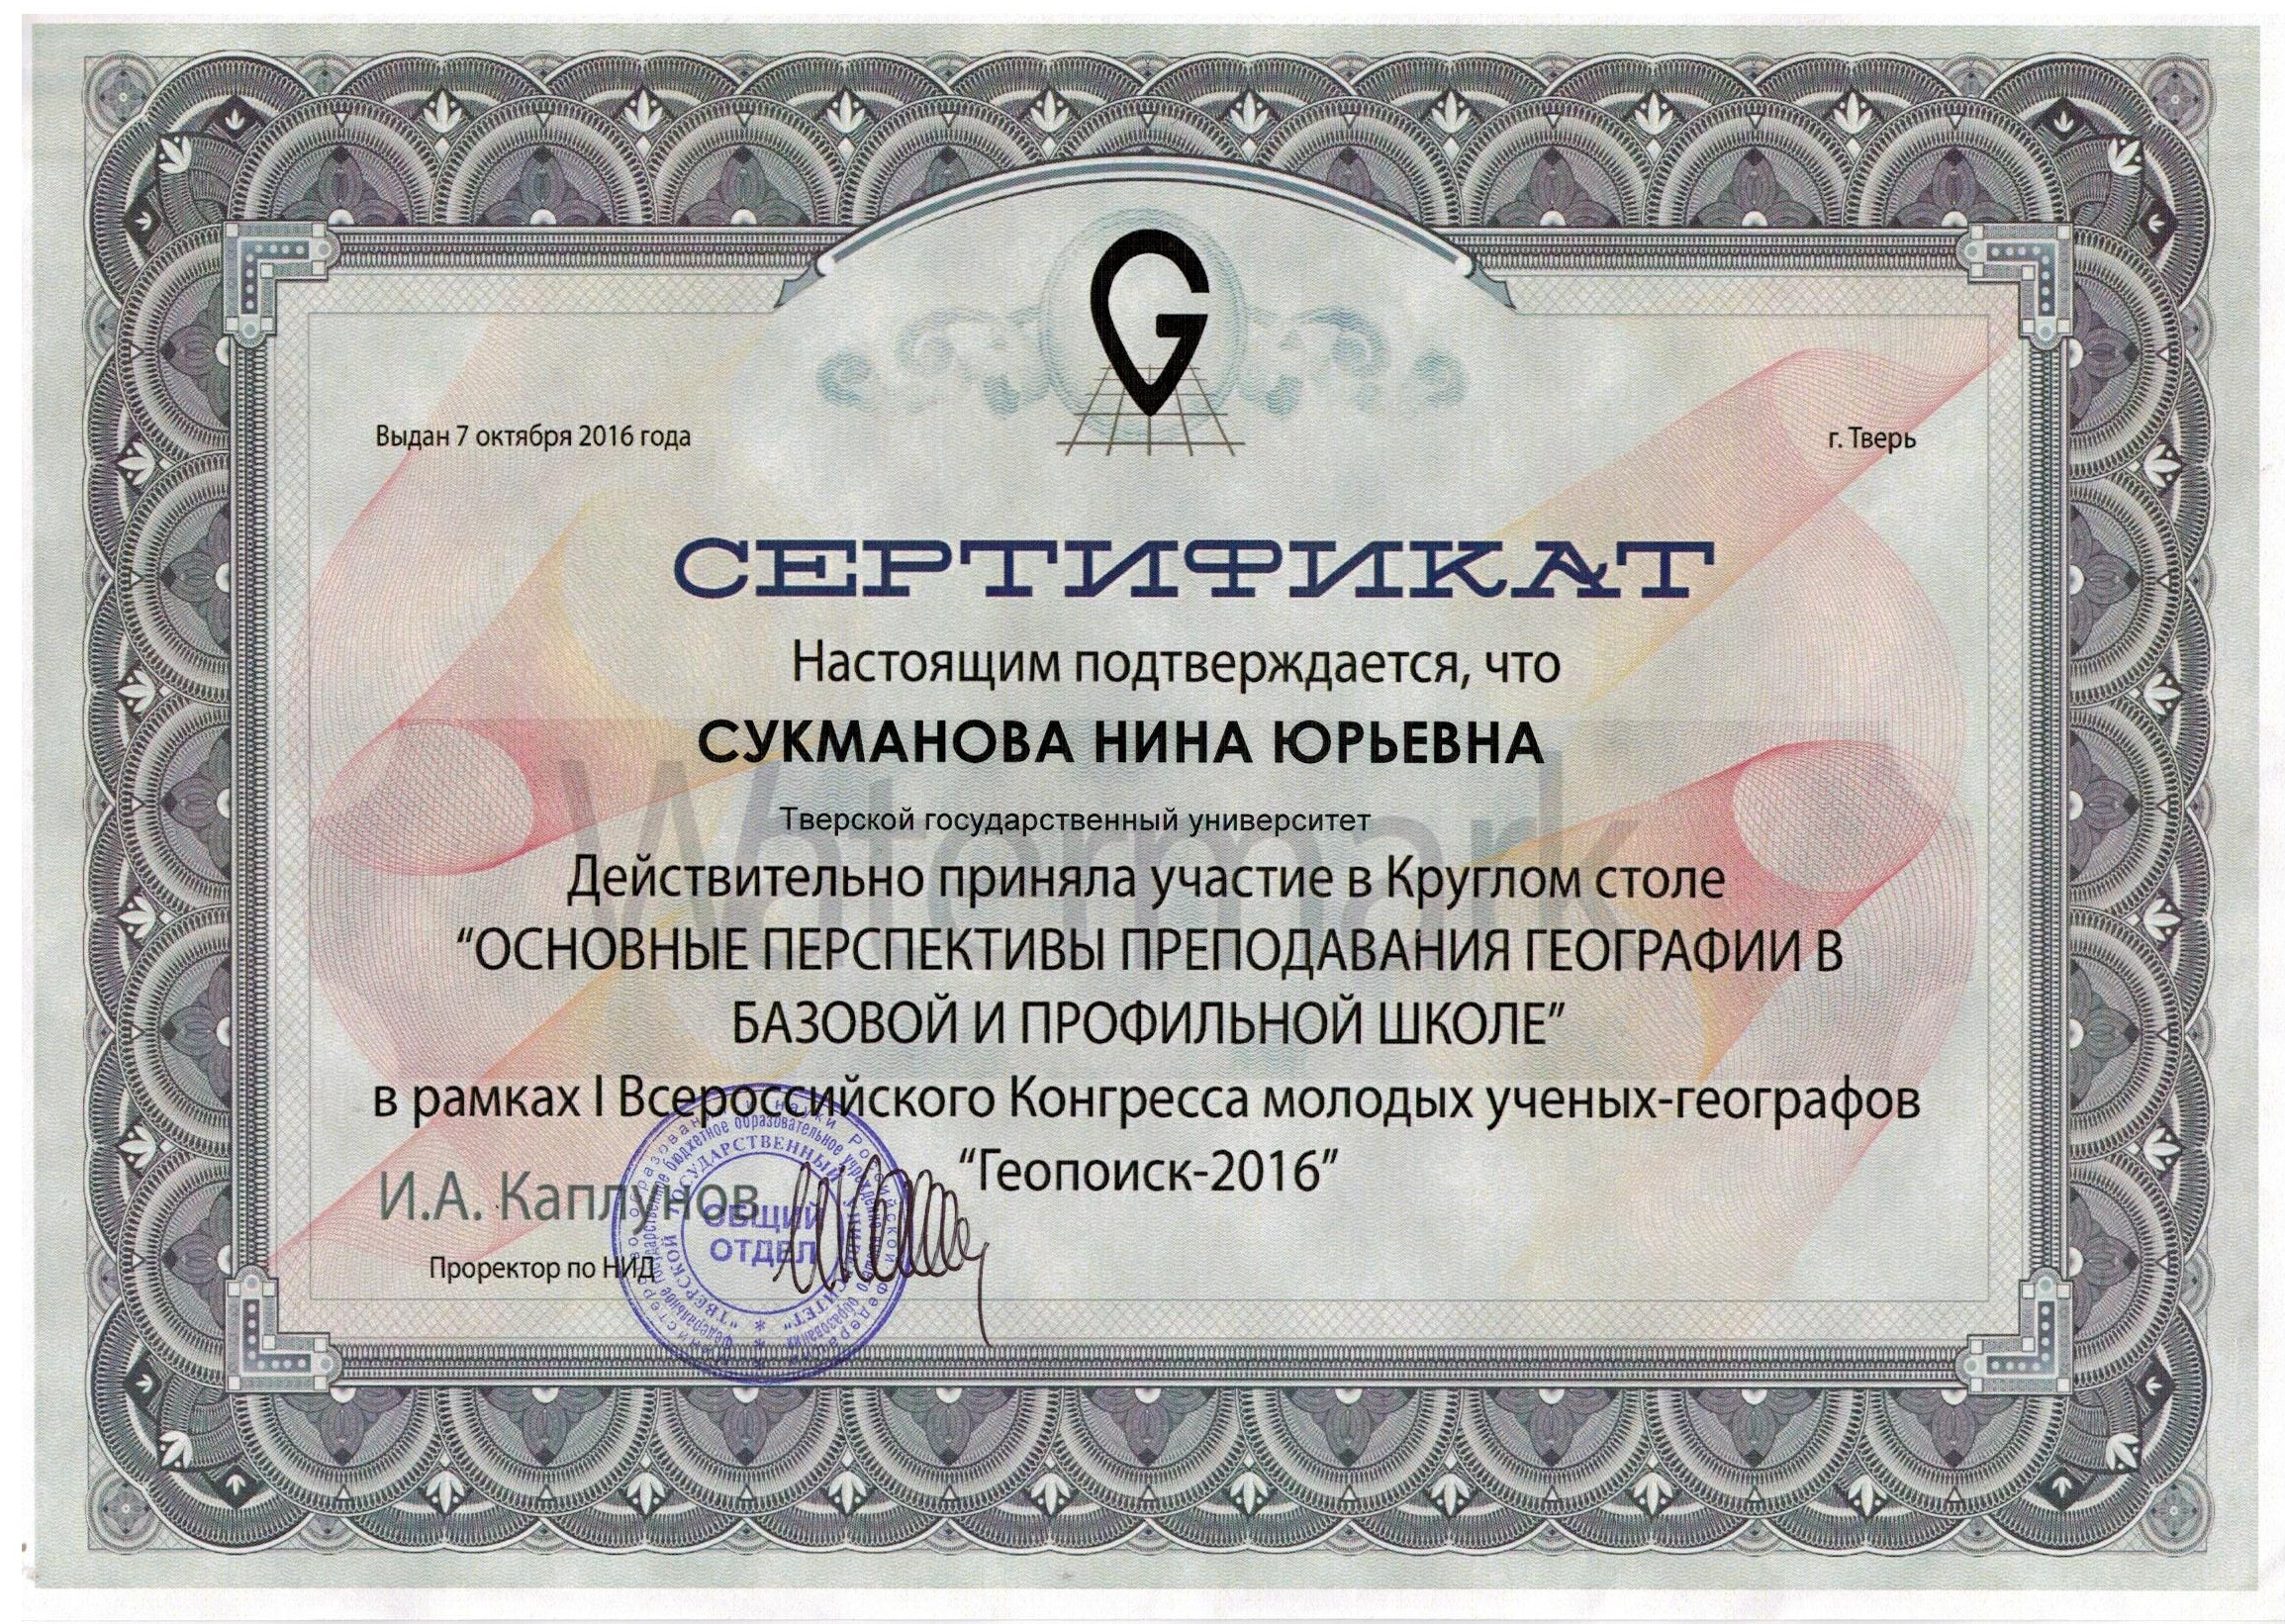 Сертификат геопоиск 2016 001.jpg